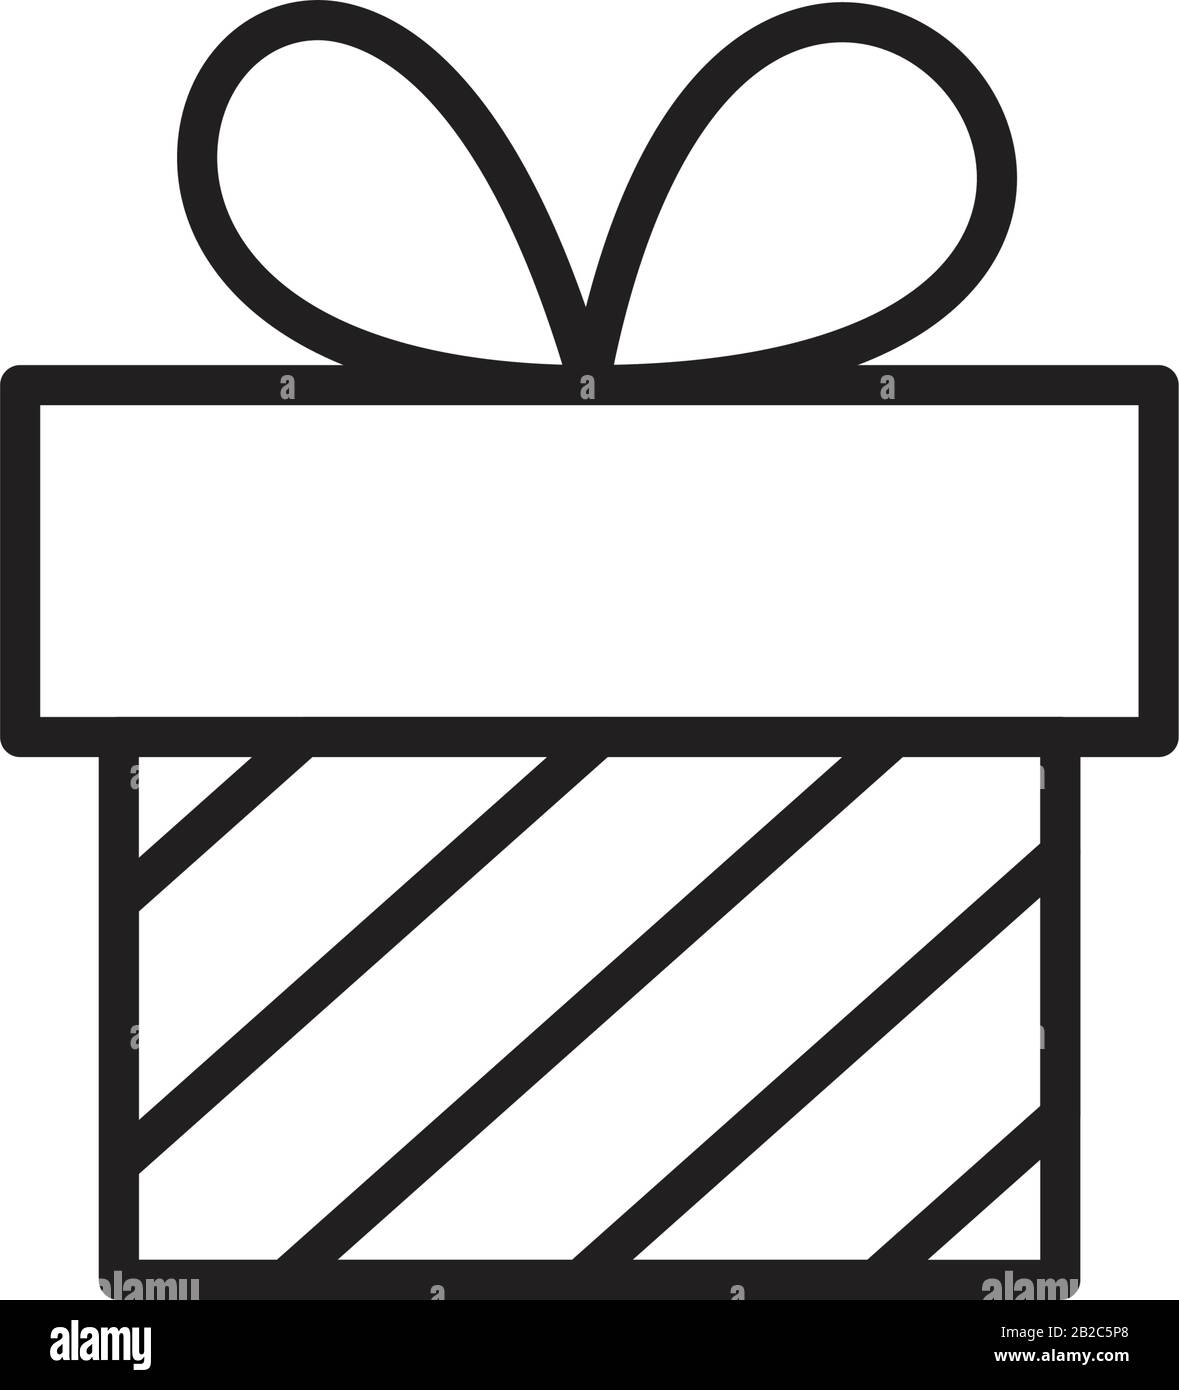 Gift box icon Banque de photographies et d'images à haute résolution - Alamy